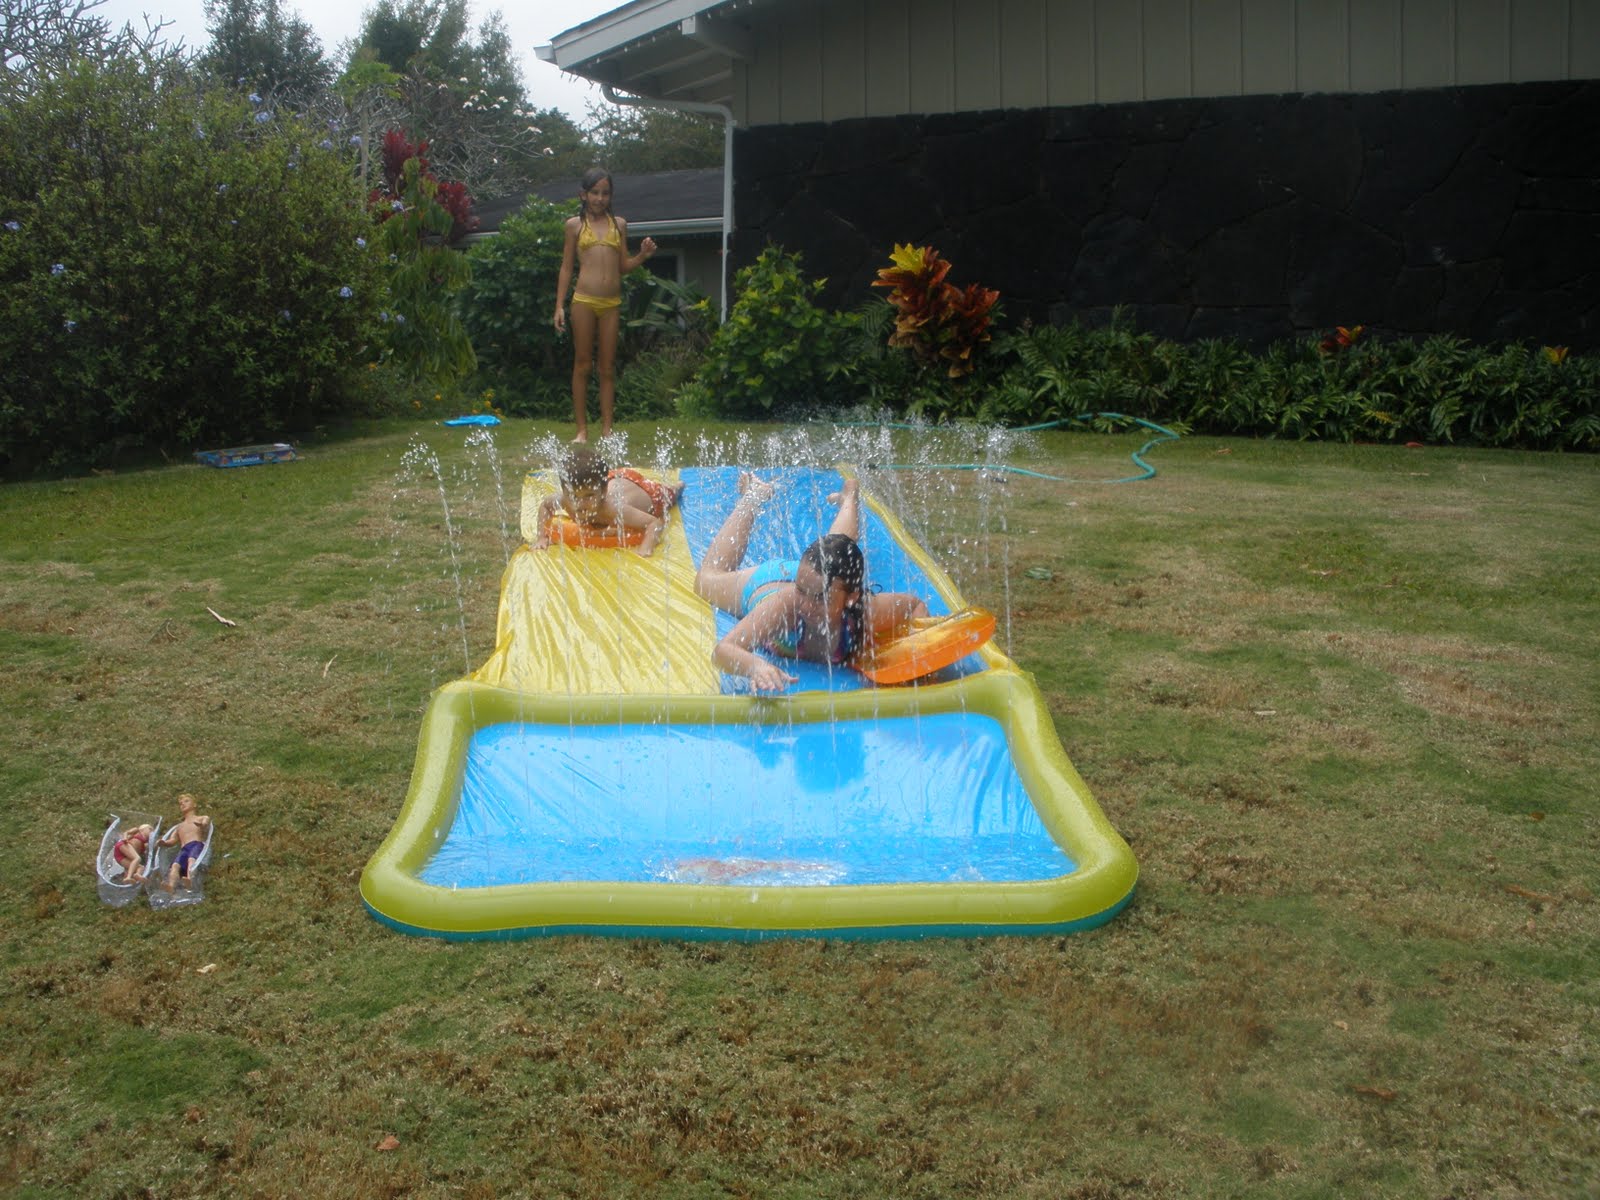 Water Slides For Kids Target